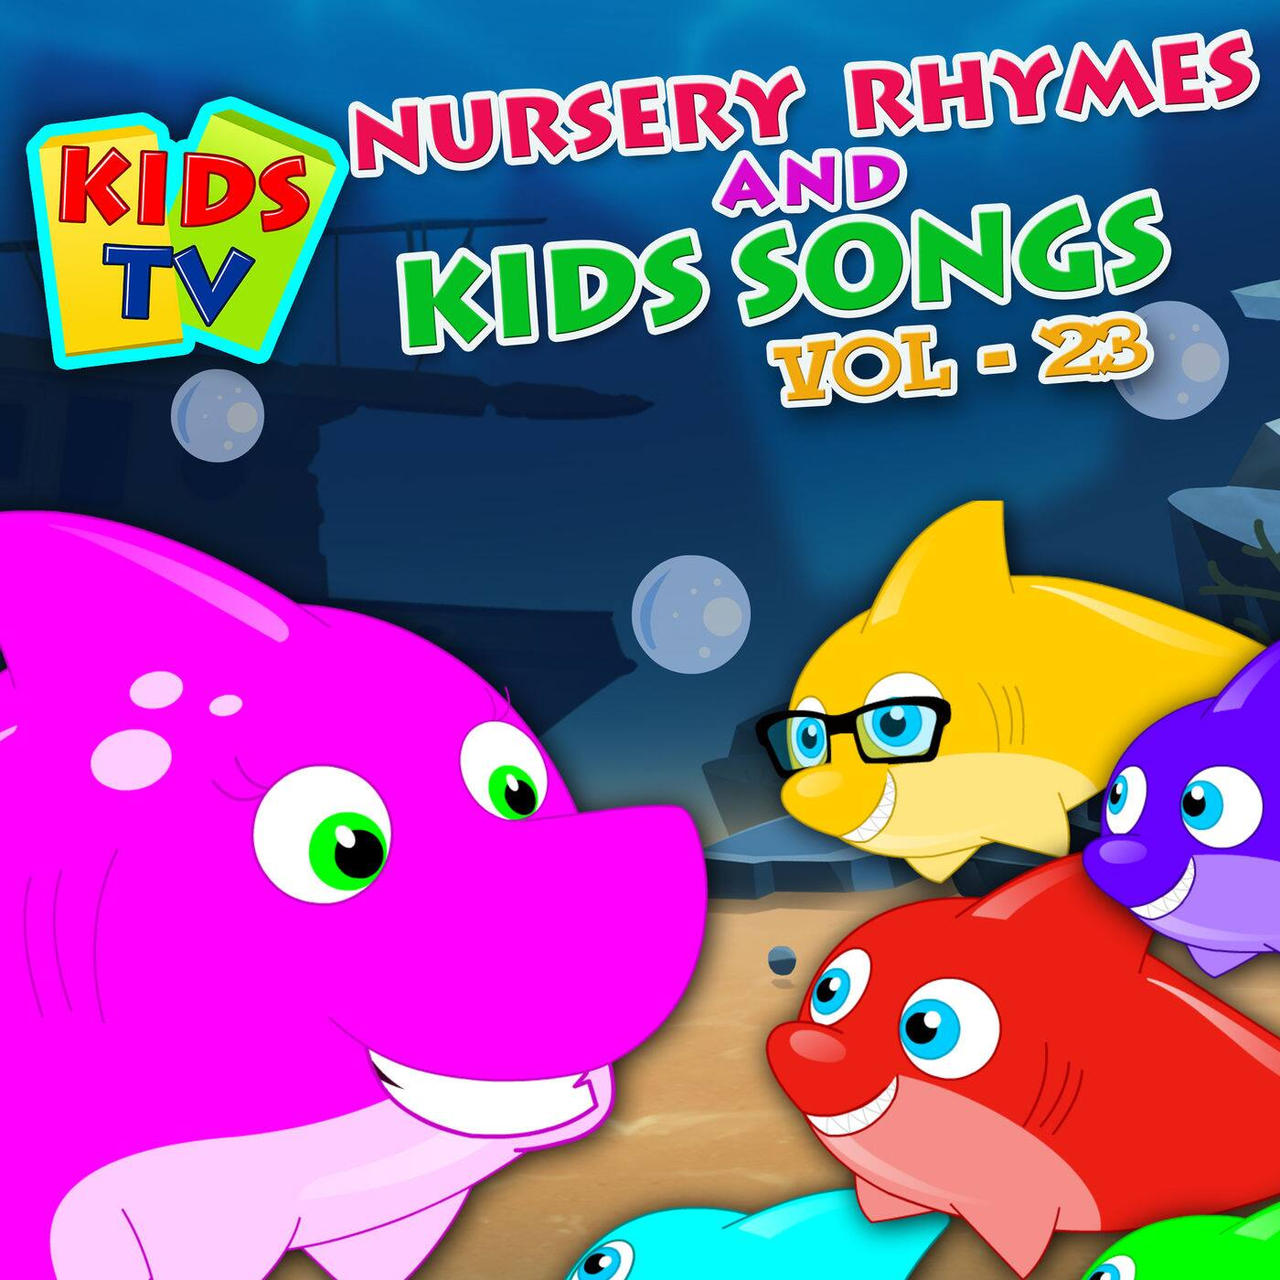 Kids TV Nursery Rhymes and Kids Songs  by Agustinsepulvedave on  DeviantArt